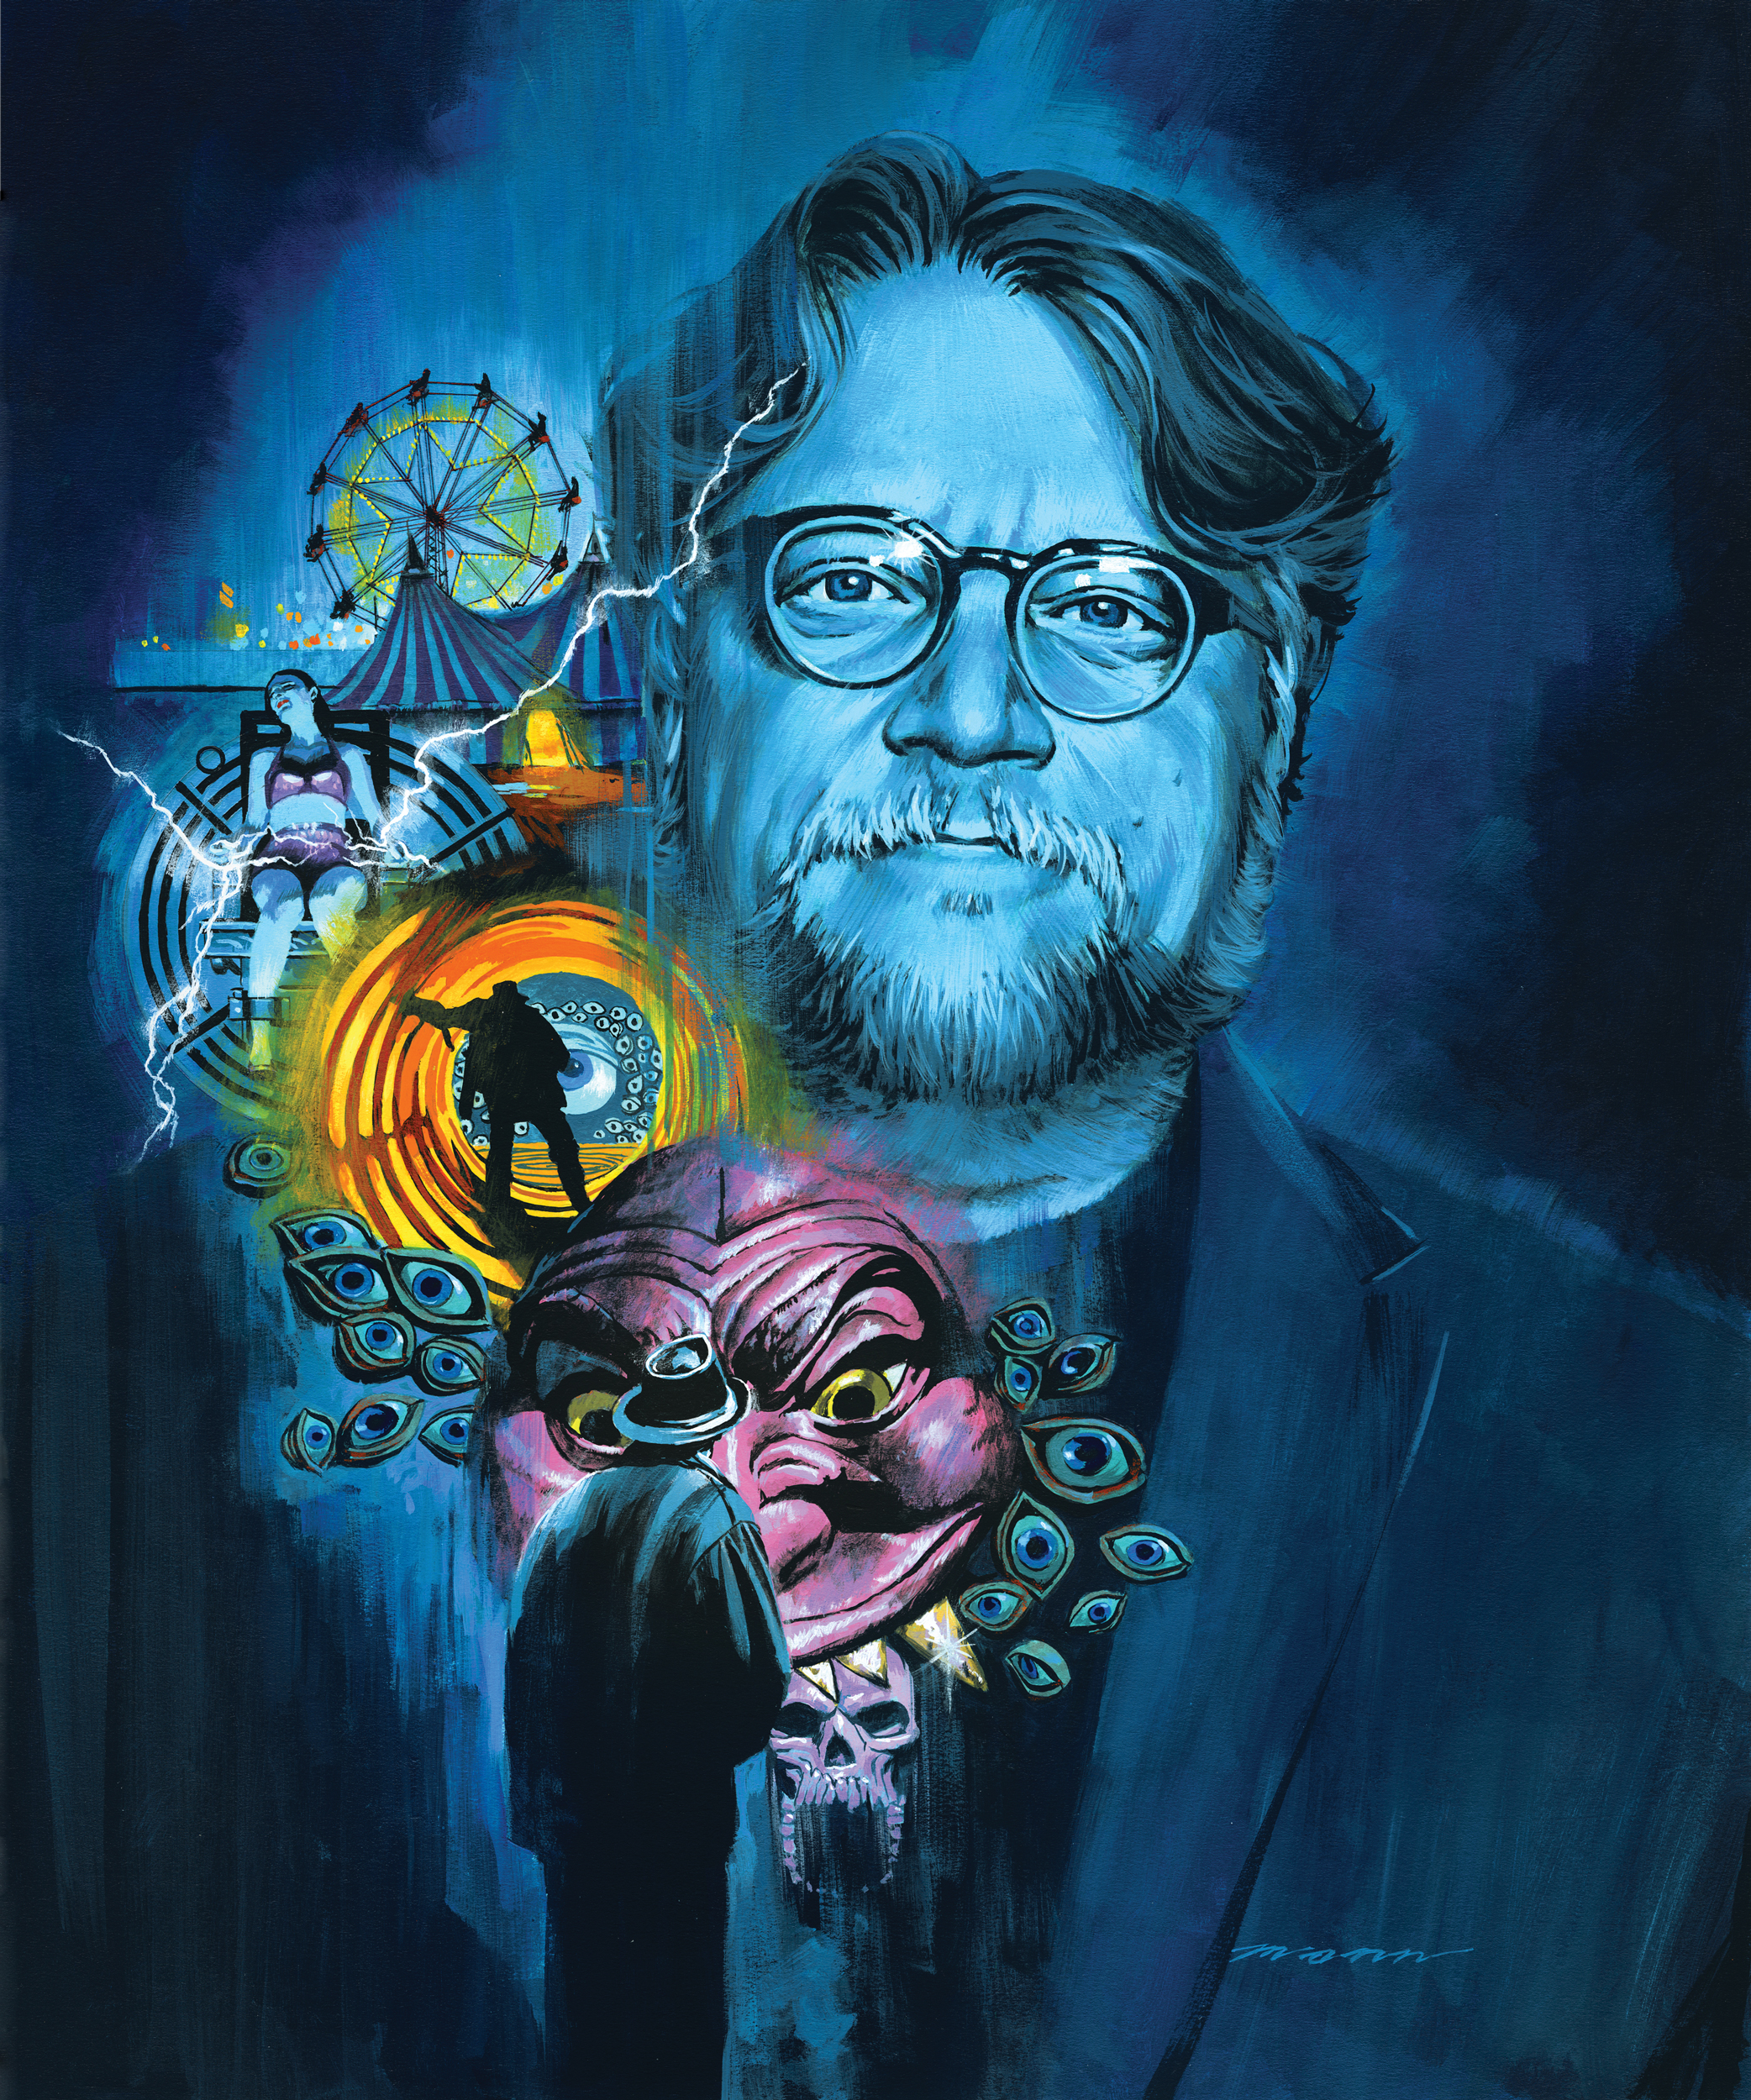 Guillermo del Toro’s American Dream turned into a nightmare.